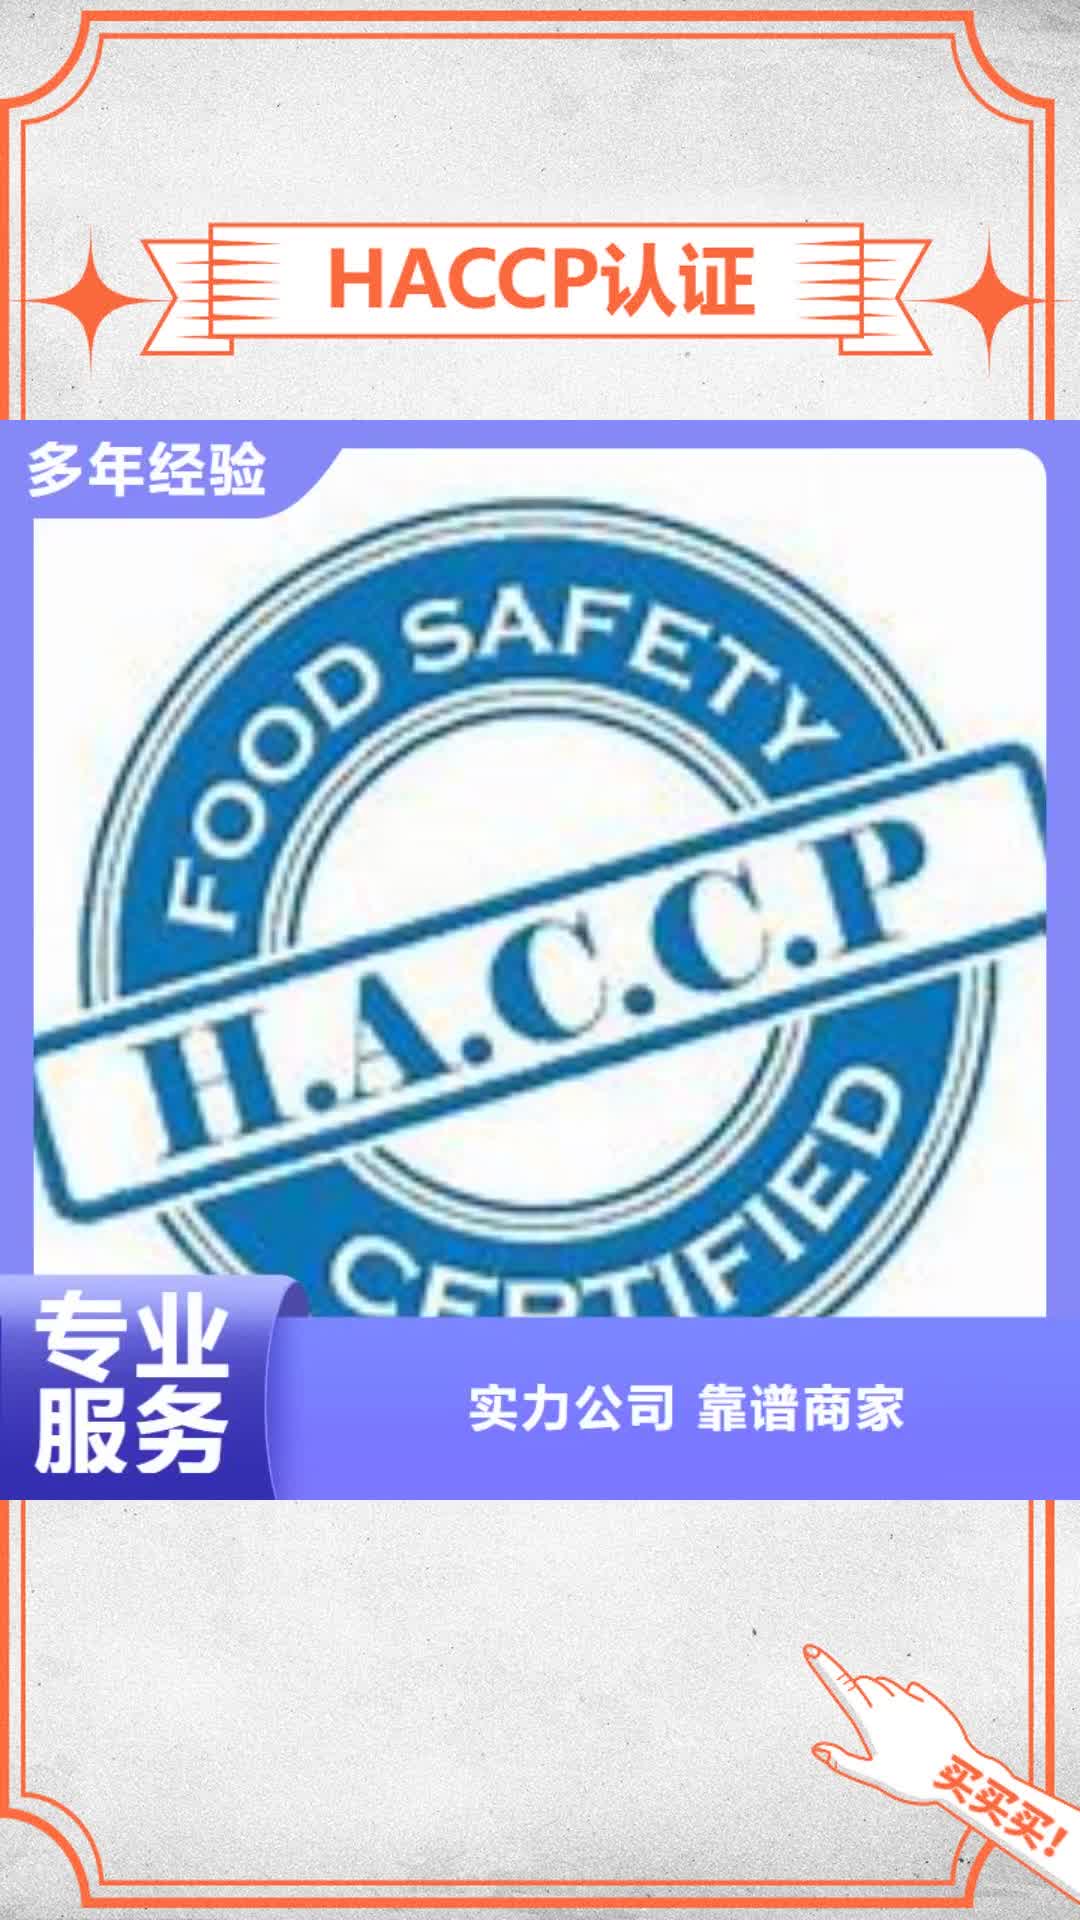 十堰 HACCP认证 【FSC认证】价格美丽